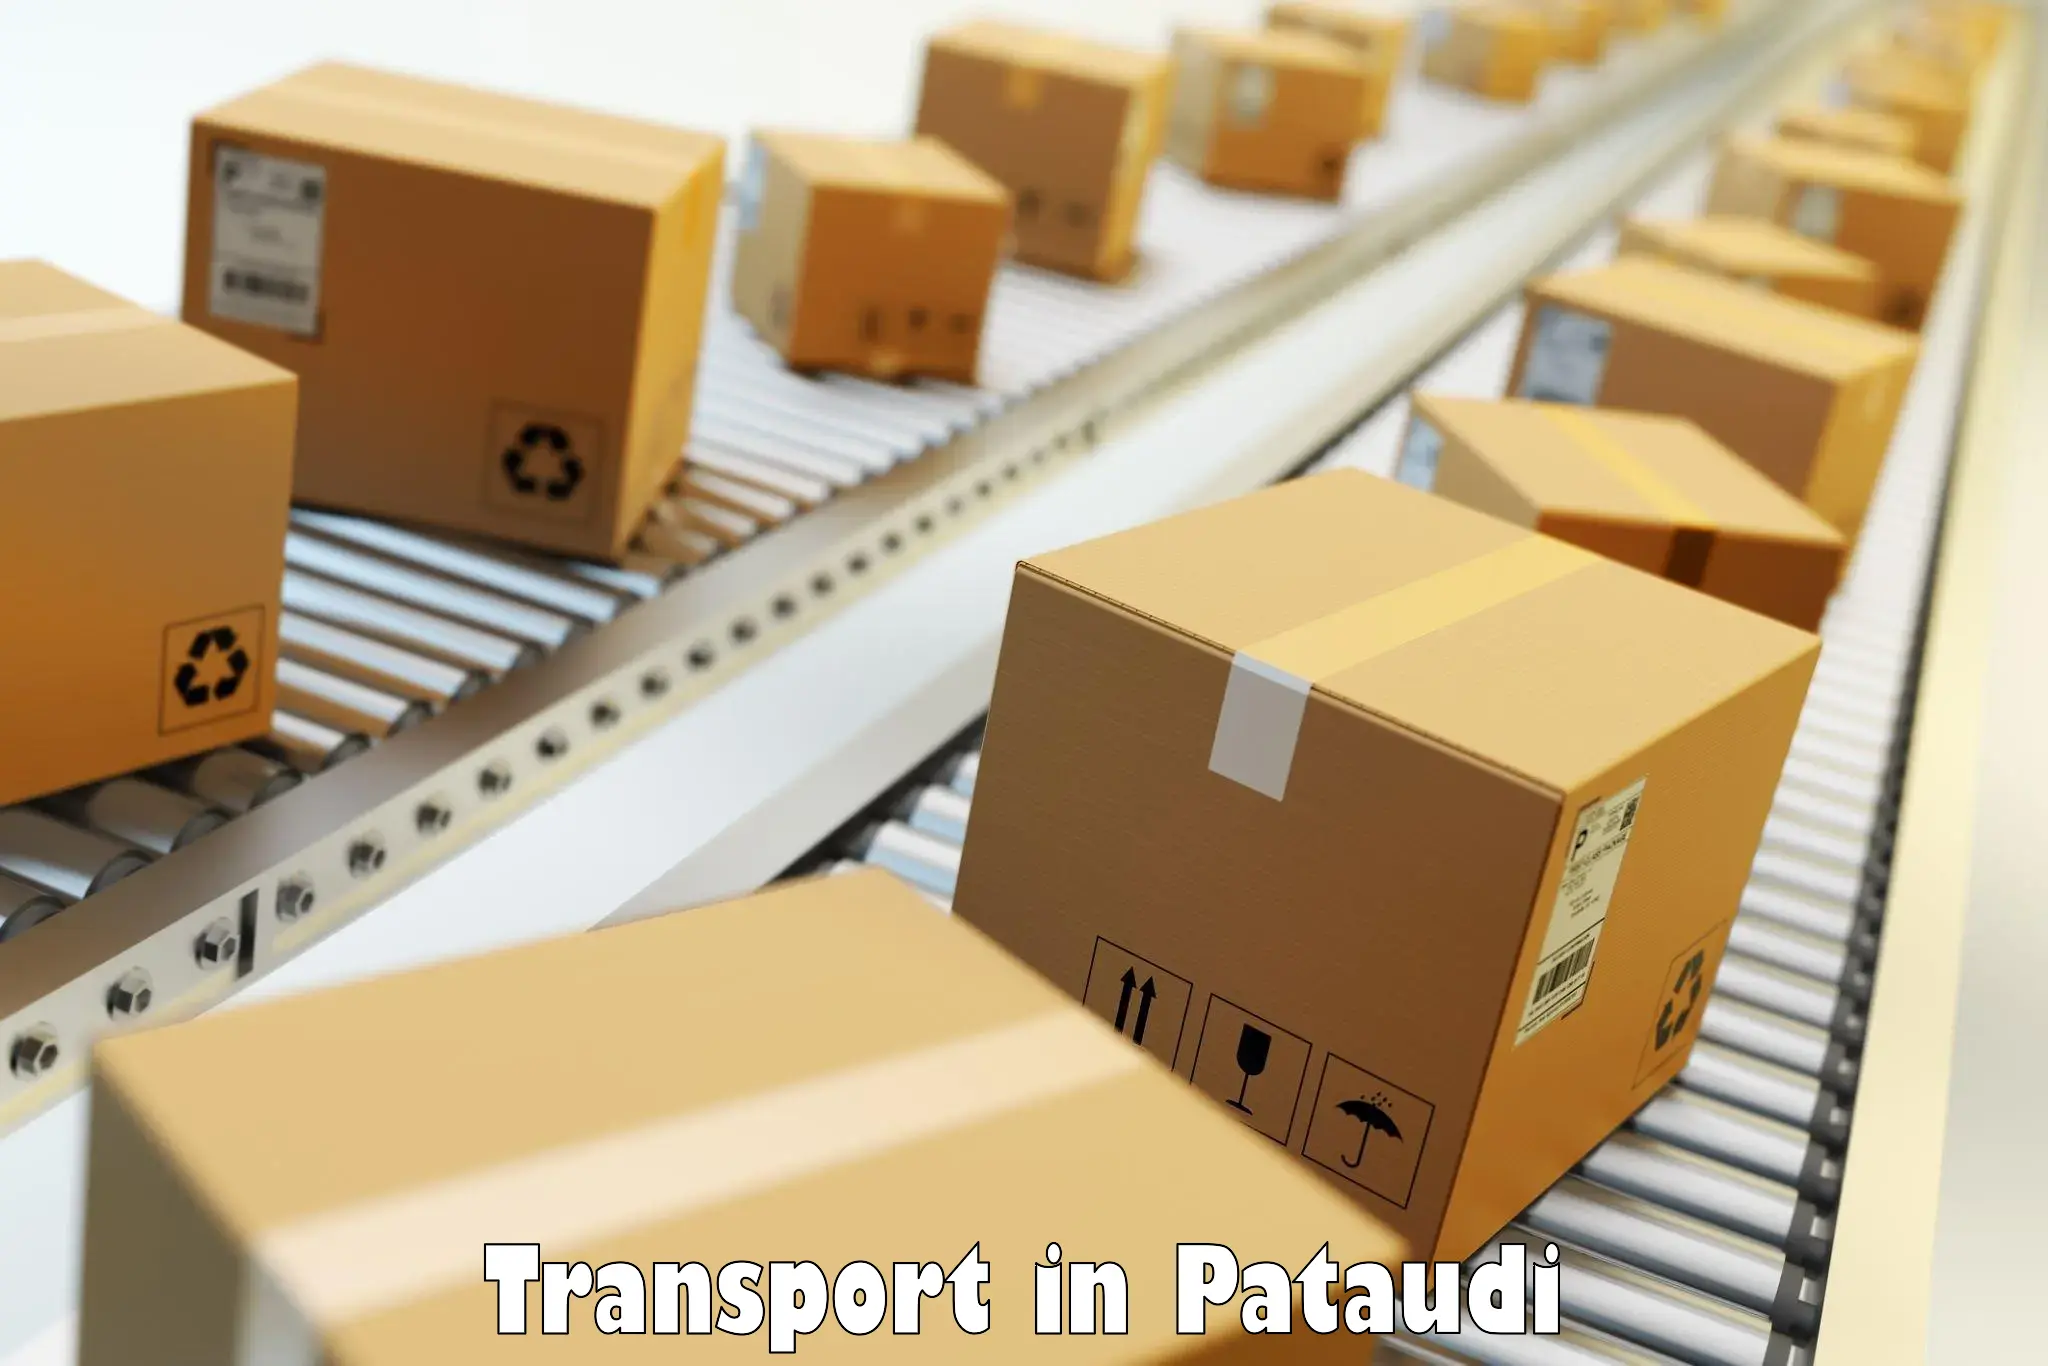 Cargo transport services in Pataudi